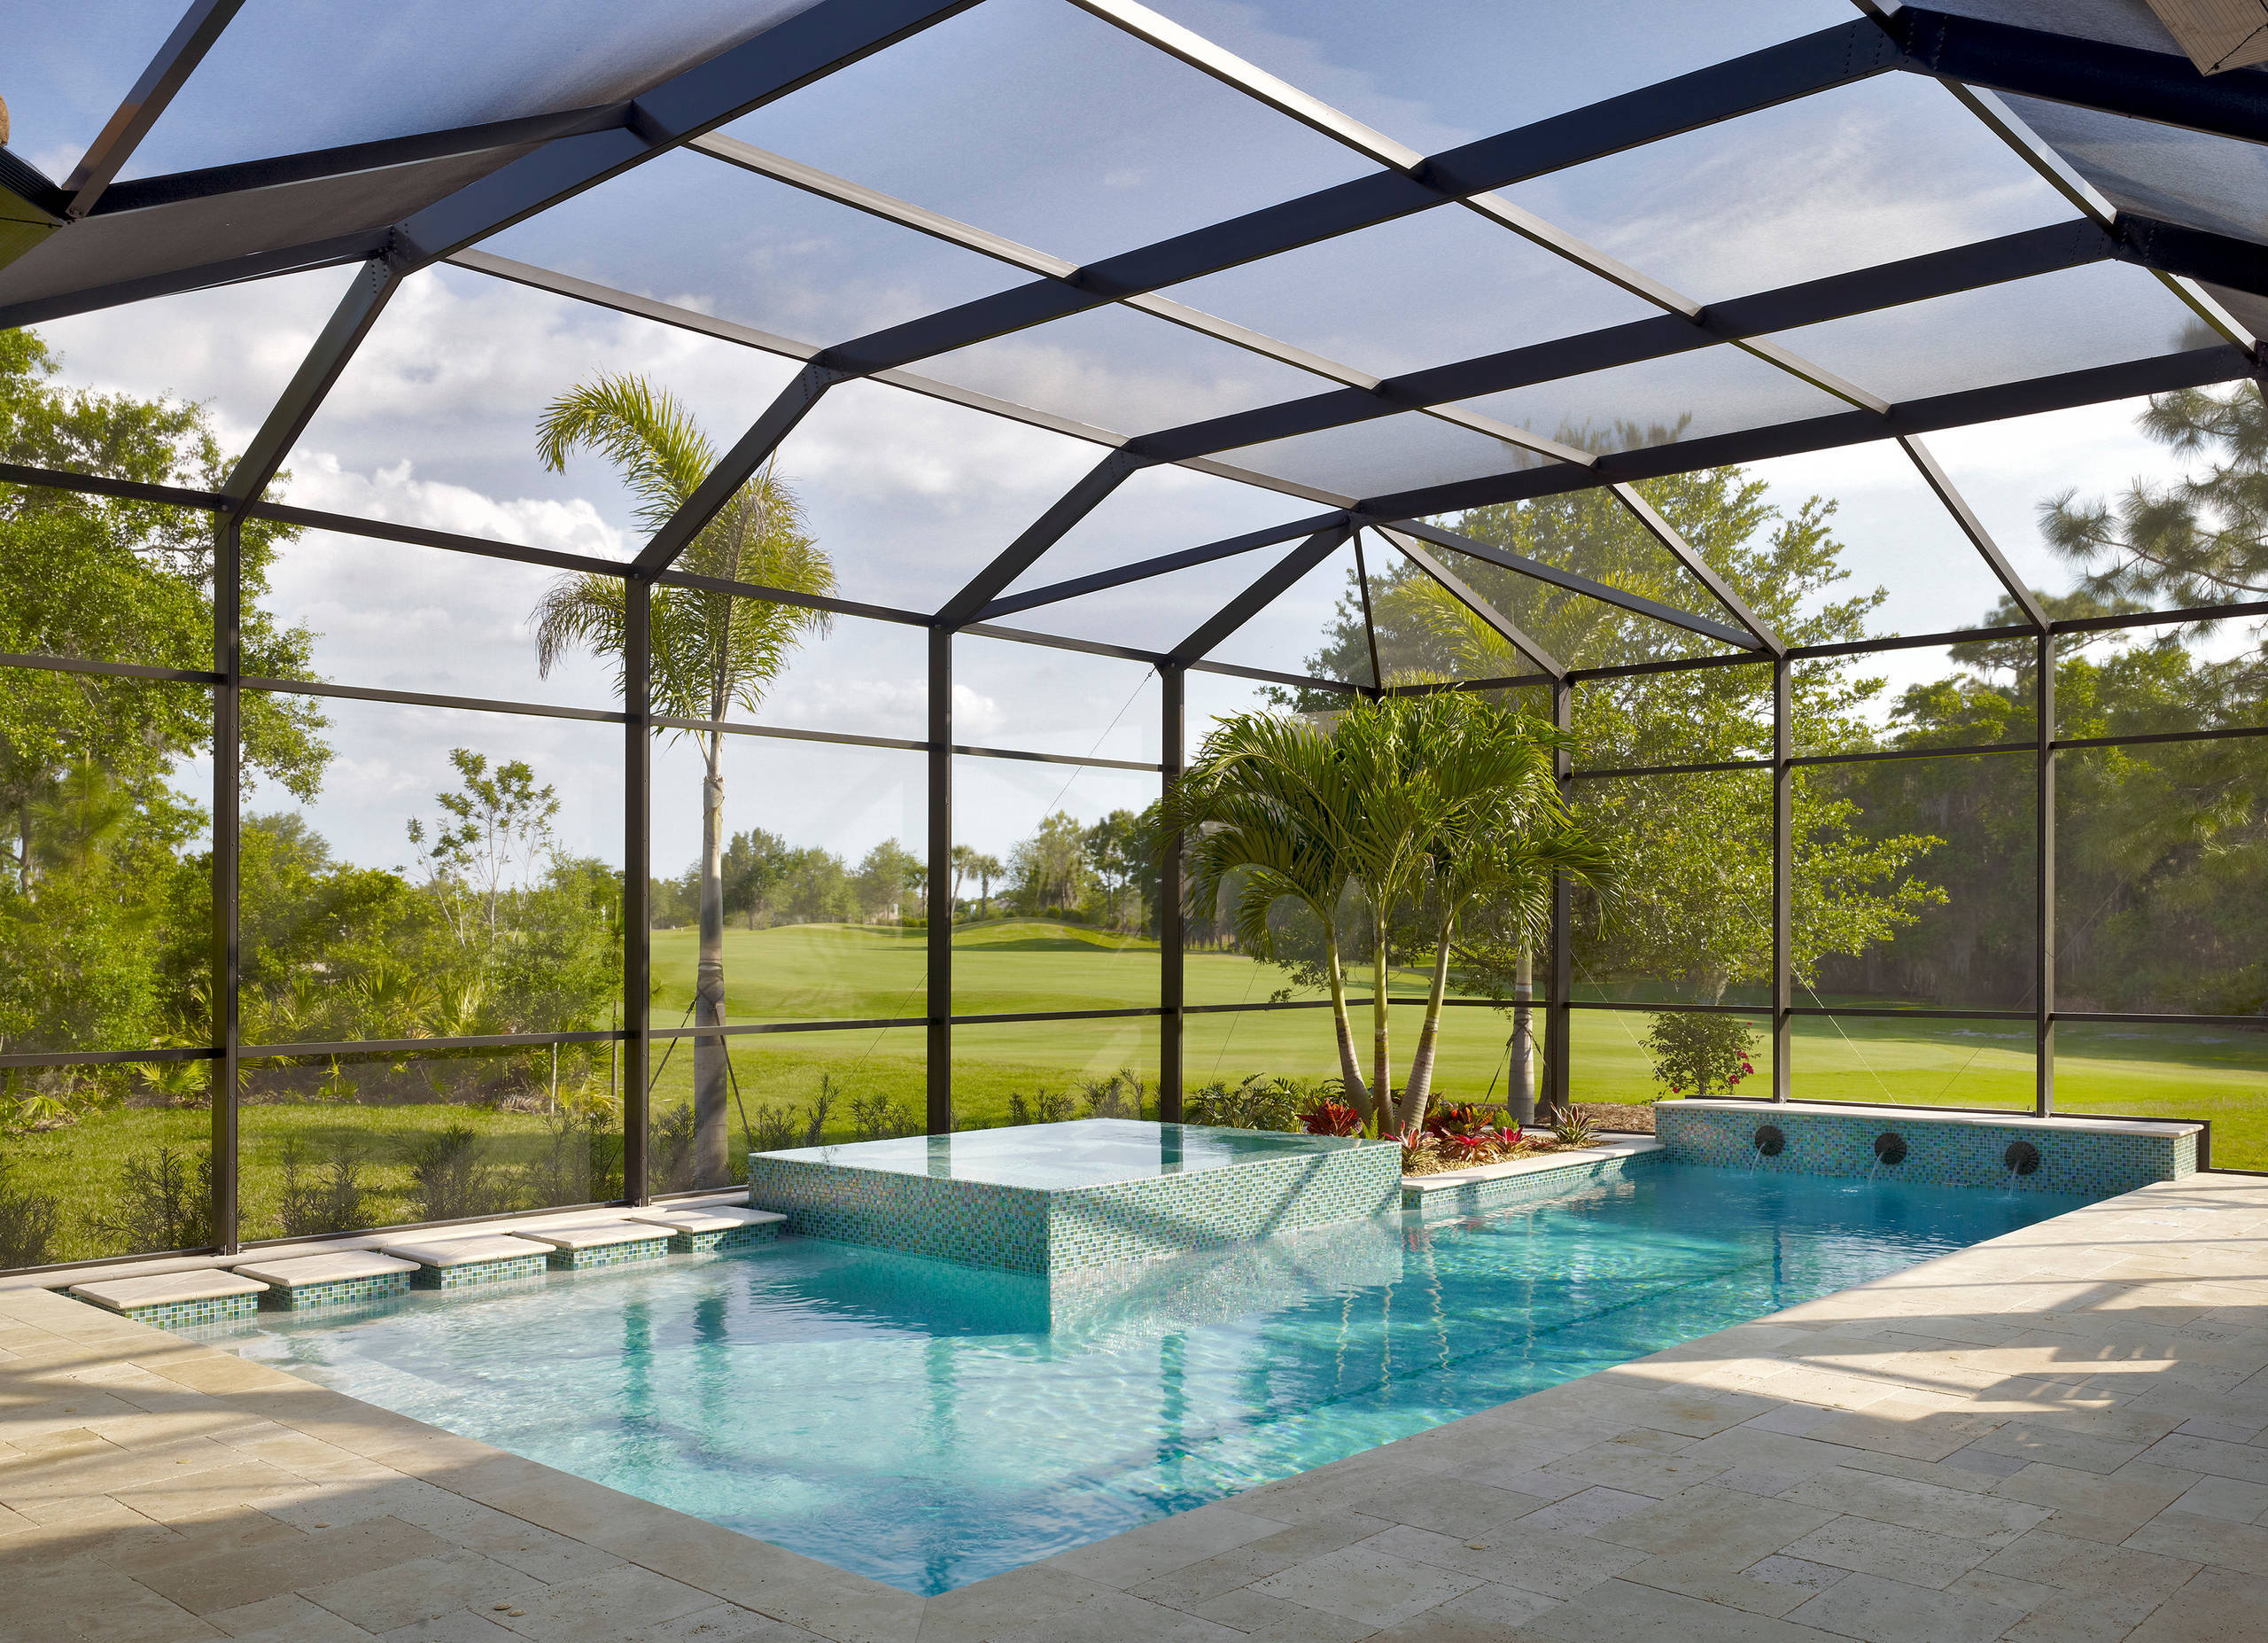 Der eigene Pool im Garten: Luxus für jeden Geldbeutel - Pooldesign